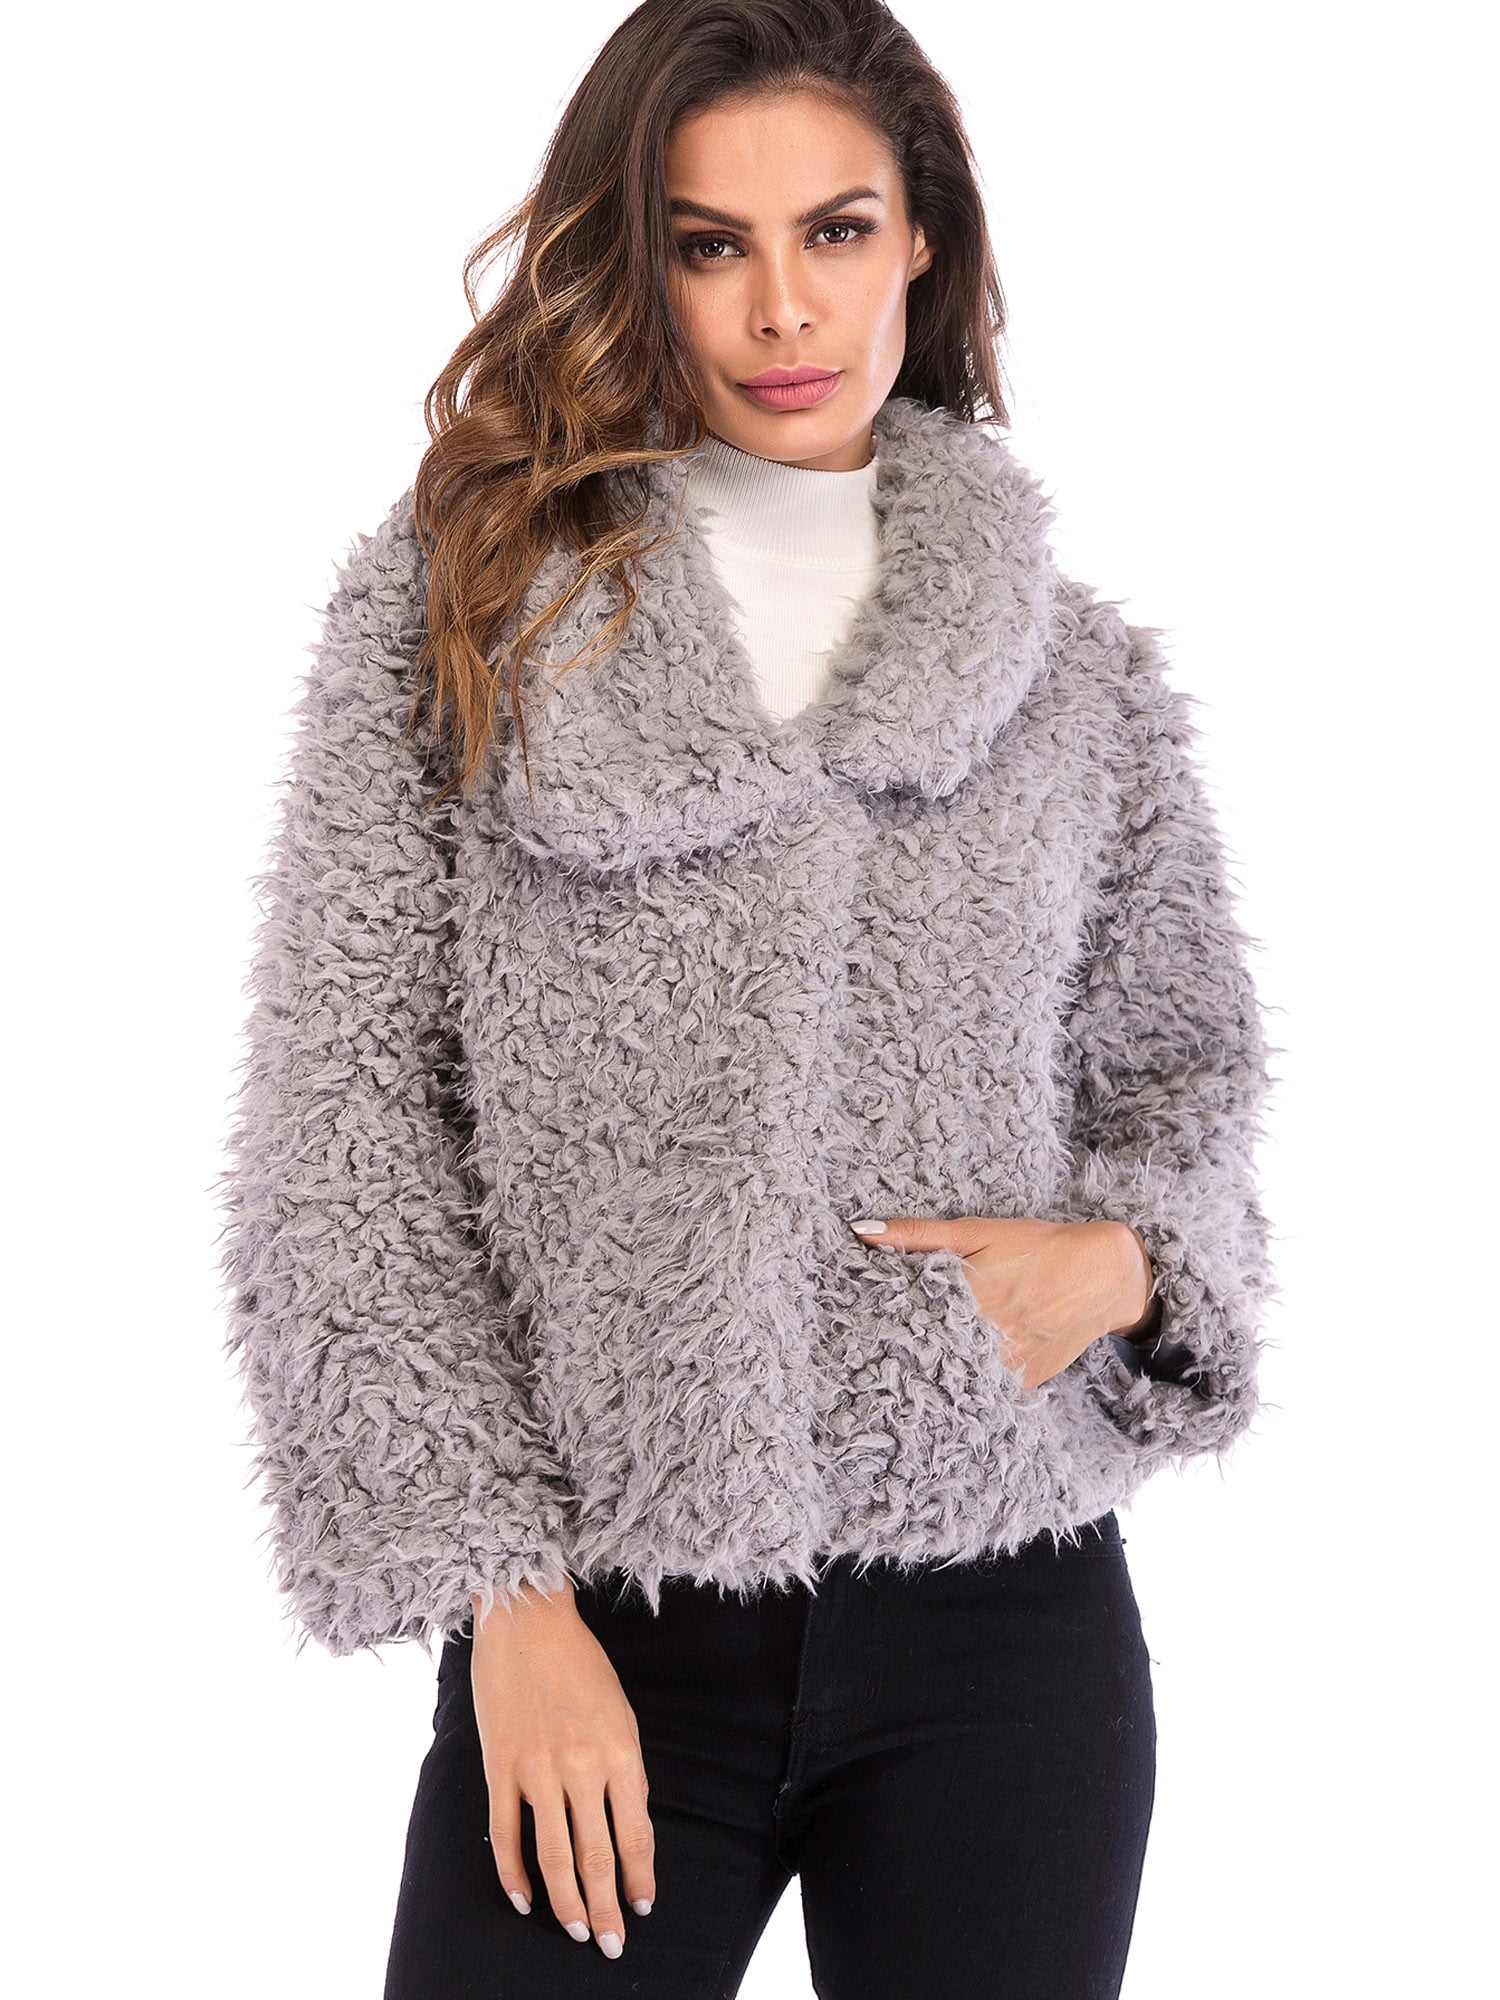 LELINTA Women's Fuzzy Fleece Lapel Open Front Short Cardigan Coat Faux ...